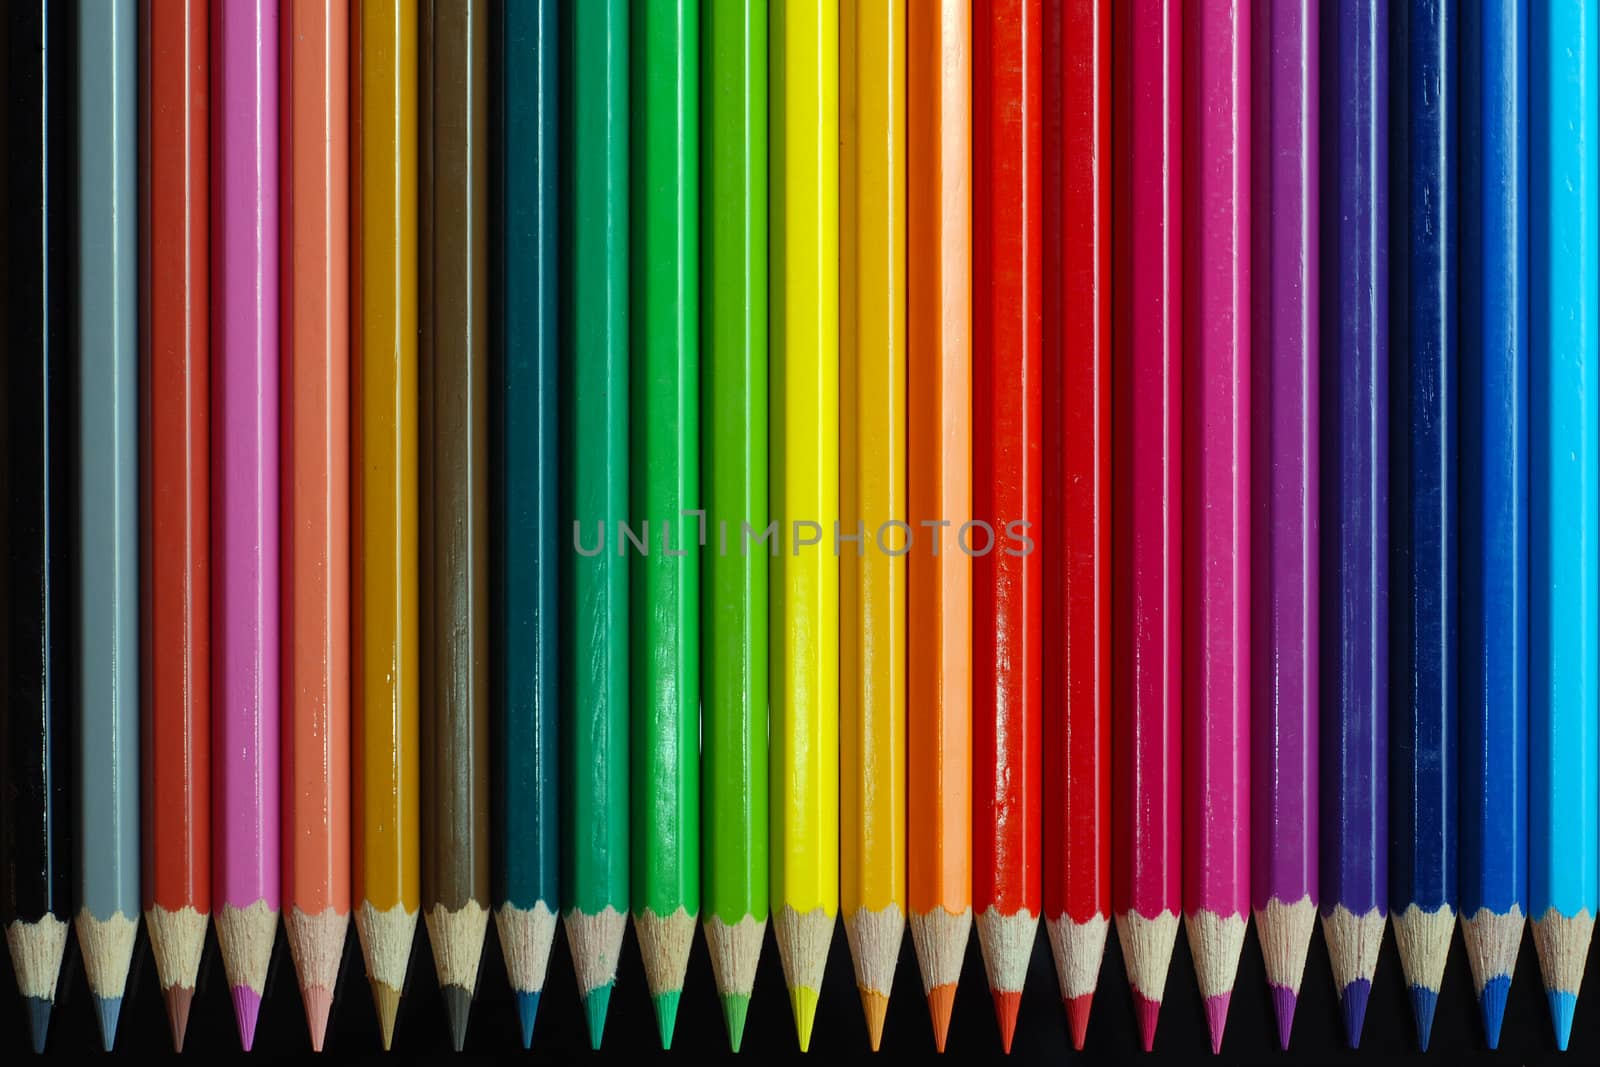 Color pencils by Gjermund